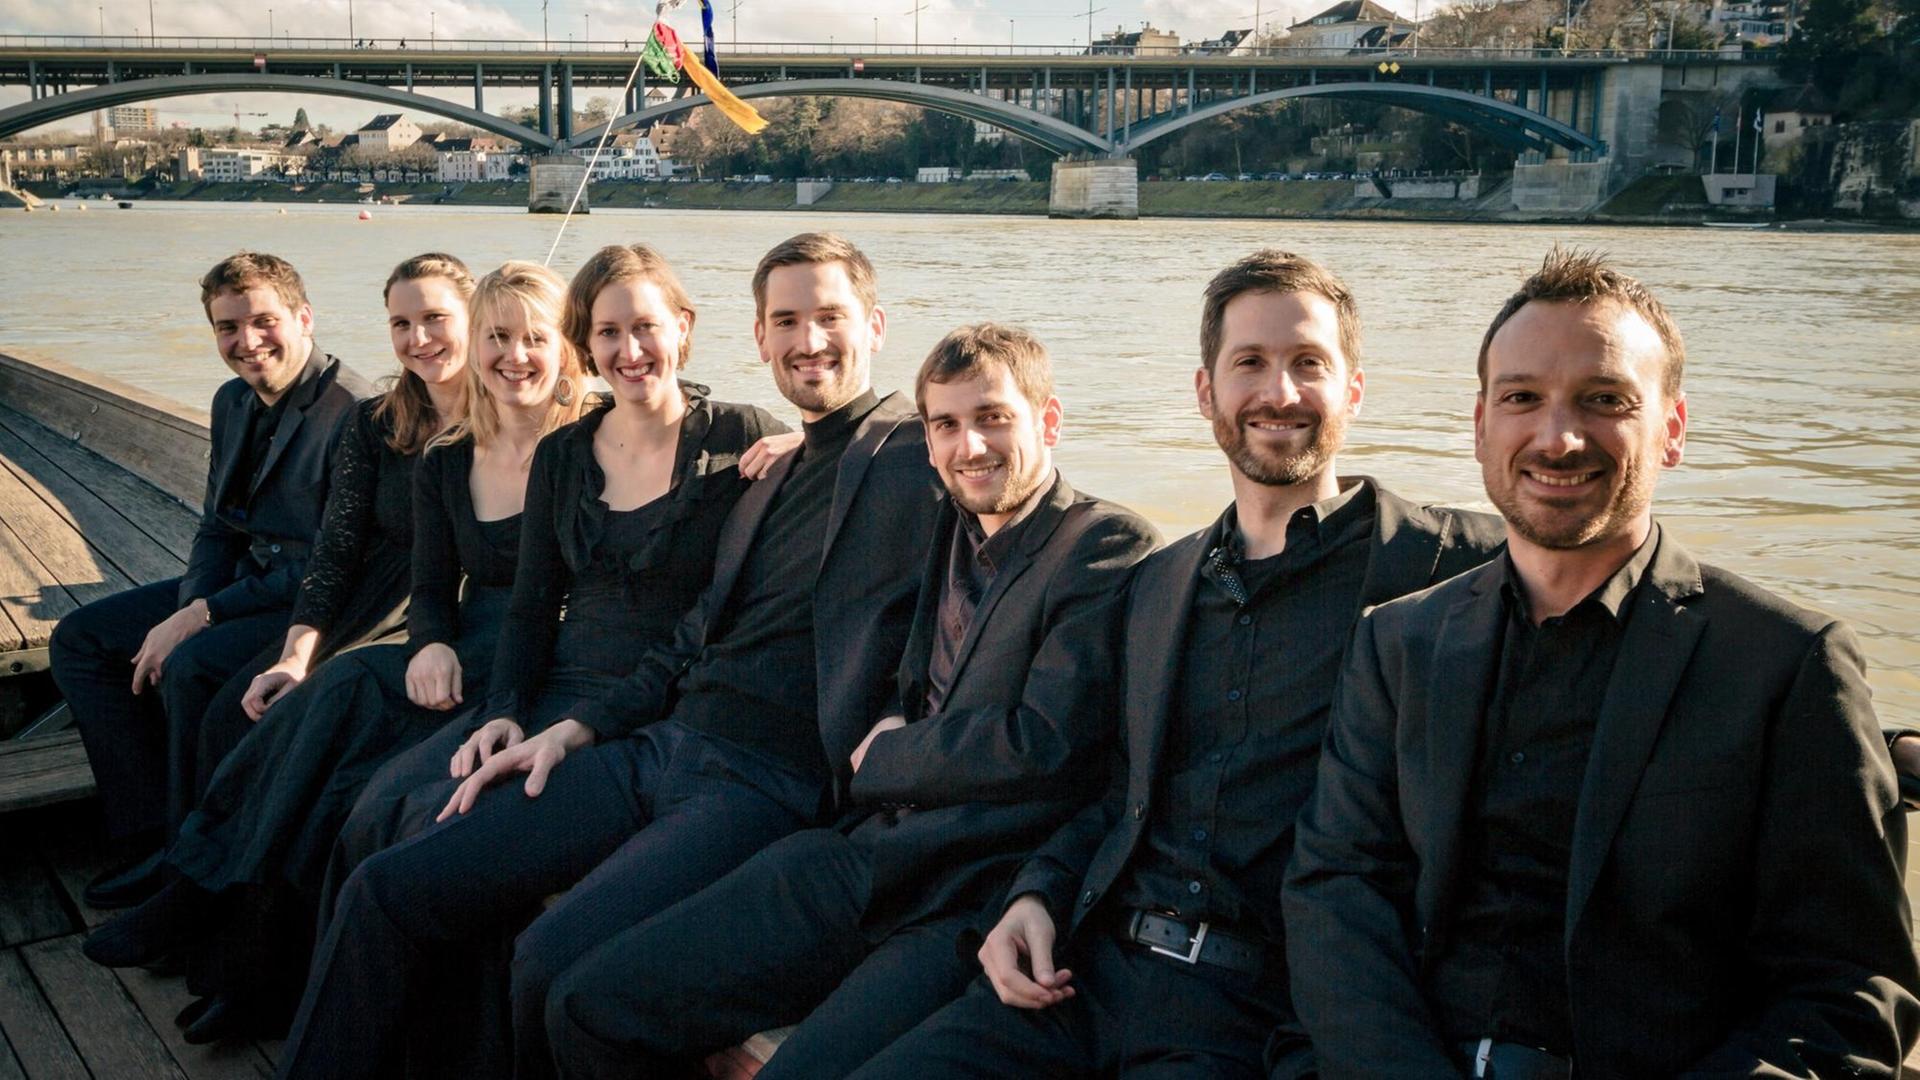 Das Ensemble Voces Suaves in Konzertkleidung aufgereiht auf einem Boot auf einem Fluss